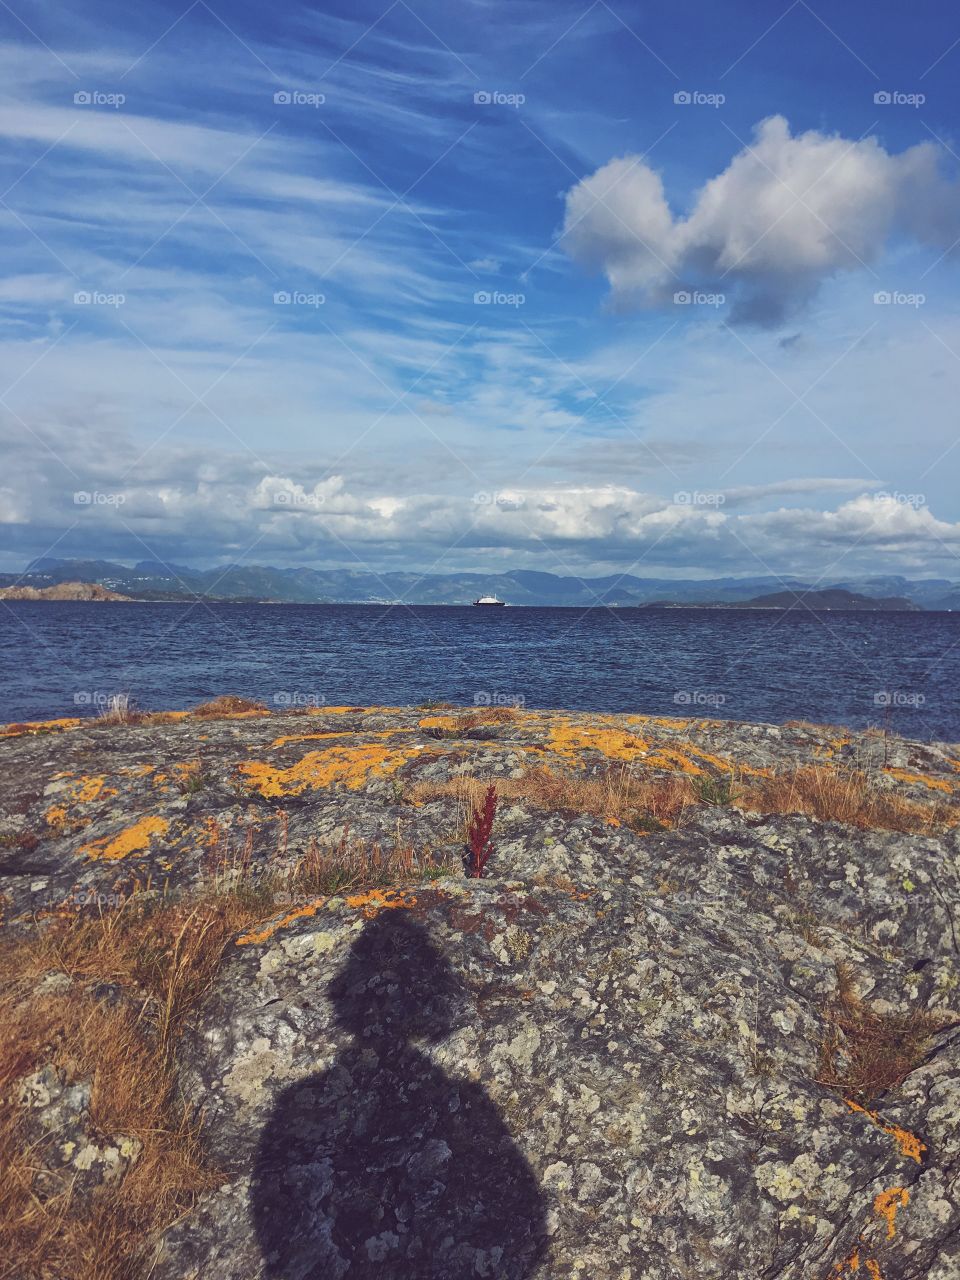 Selfie on the Randøy island, Norway. 